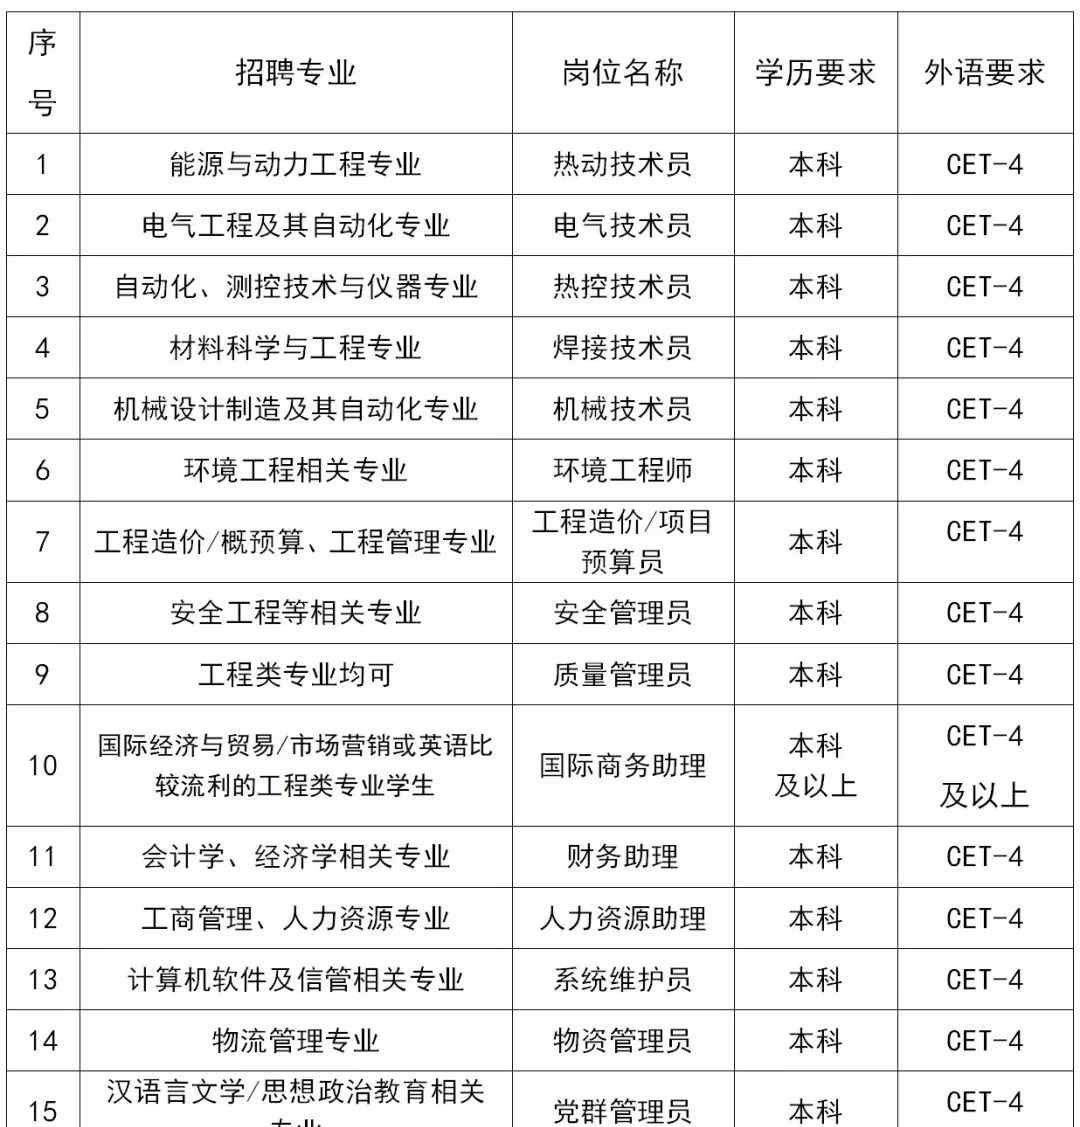 上海电力建筑工程公司 【宣讲会】上海电力建设有限责任公司